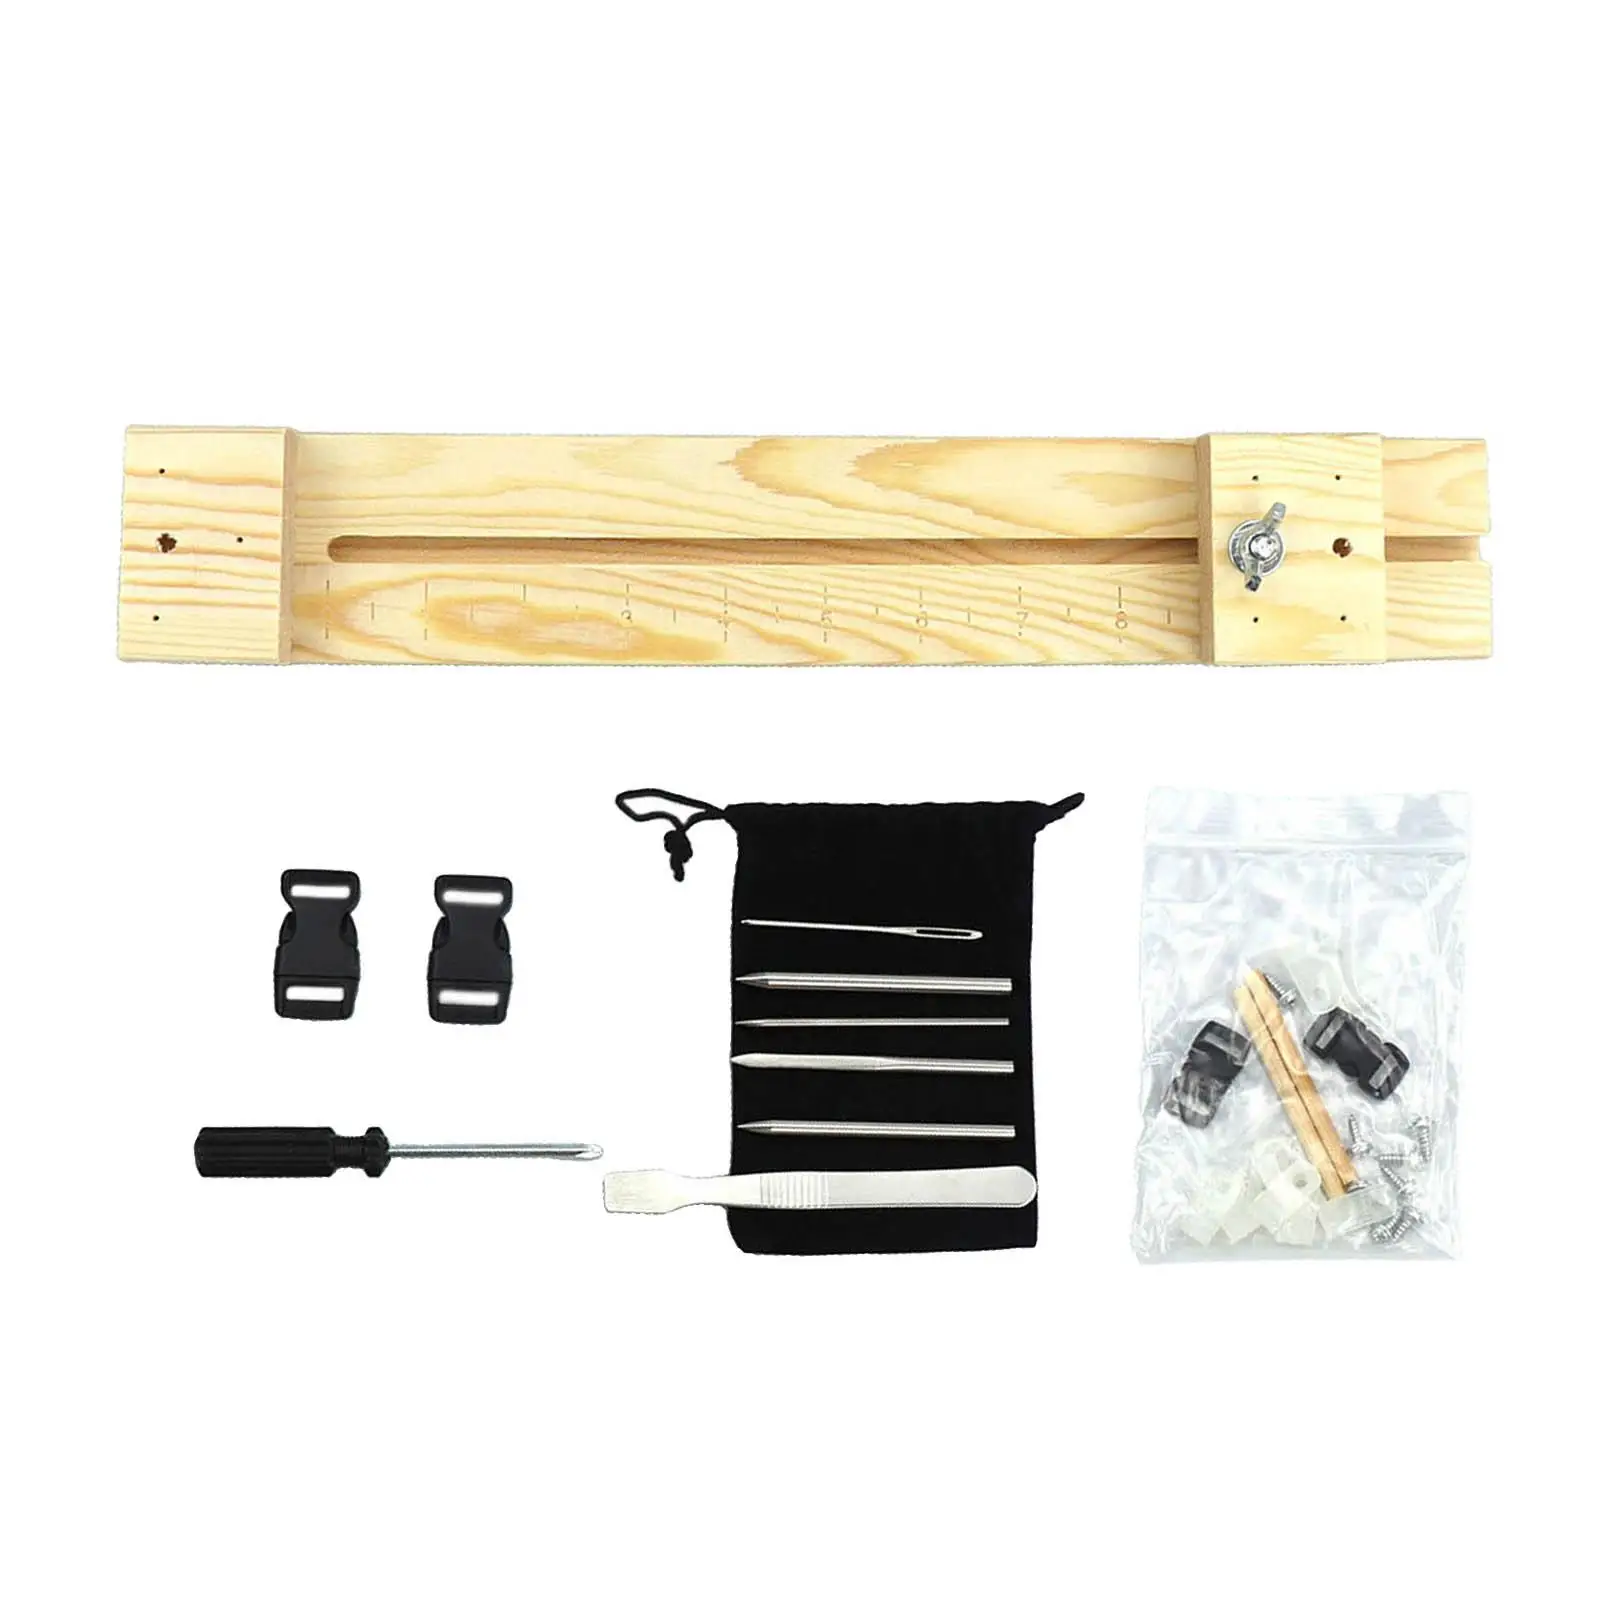  Jig Bracelet Maker, Adjustable Length, with Buckle, Wristband Maker  Braiding Weaving crafts Kit